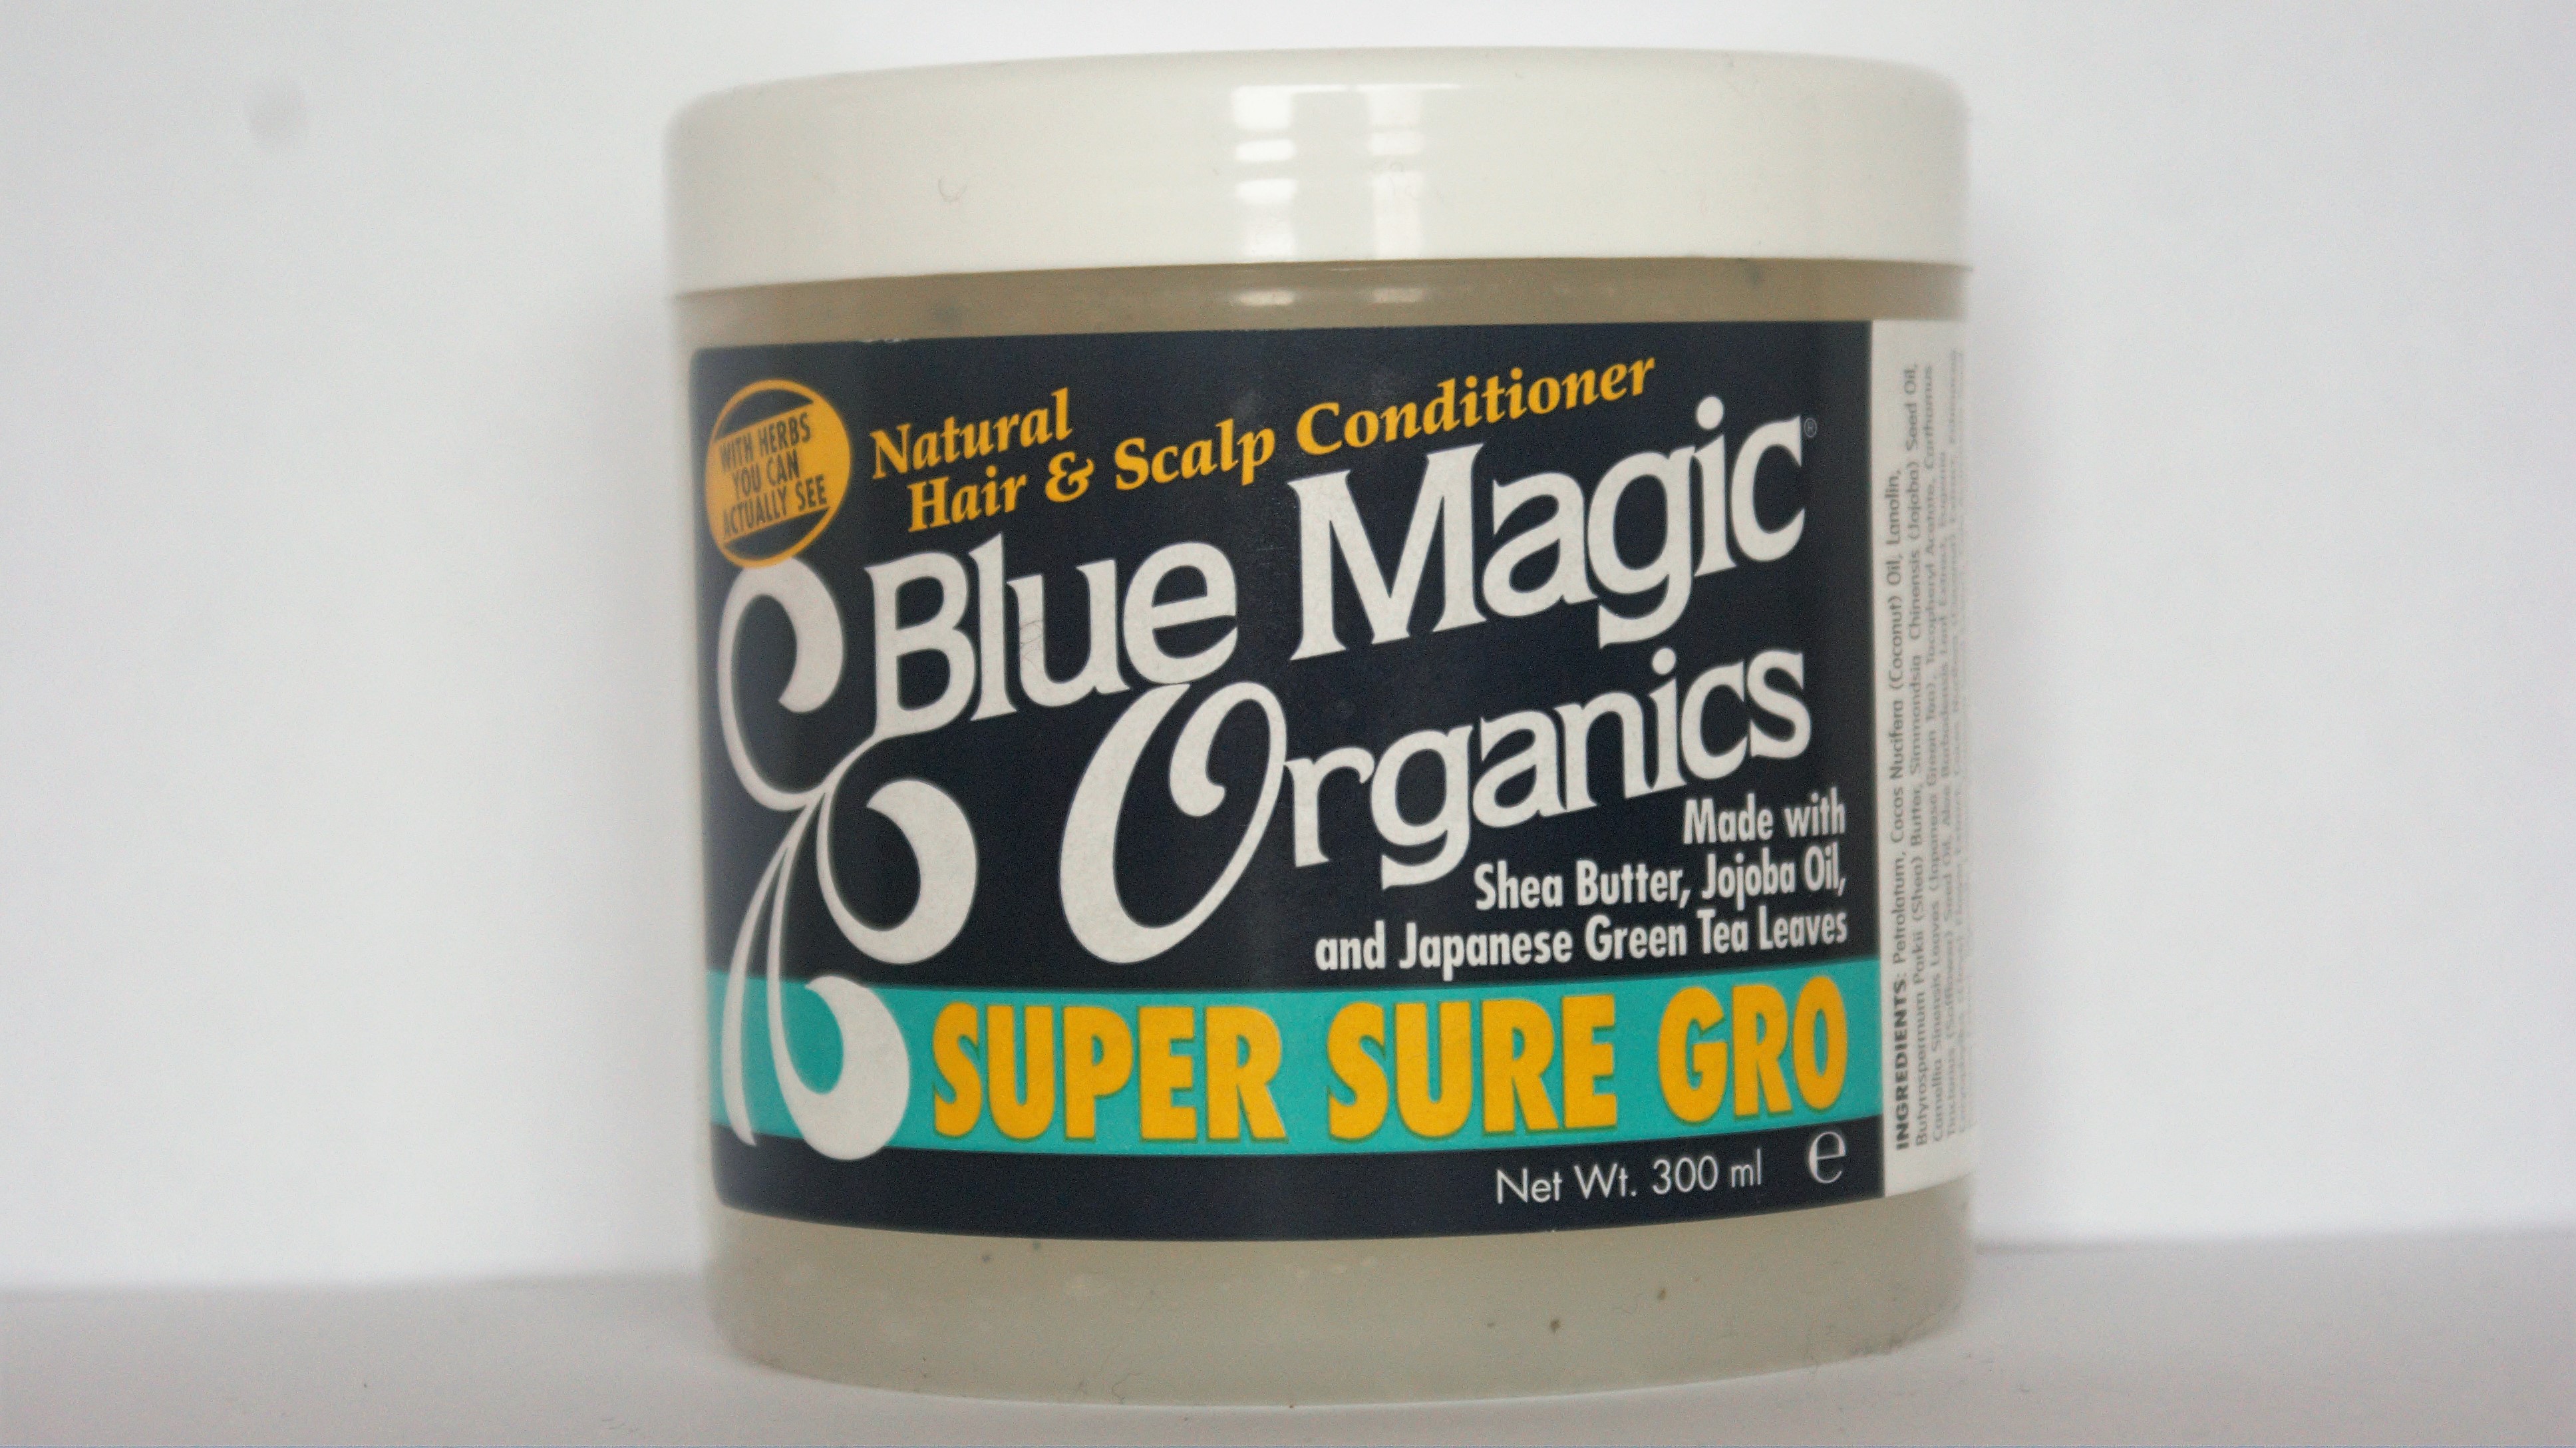 Blue Magic Organics Hair Care - wide 2